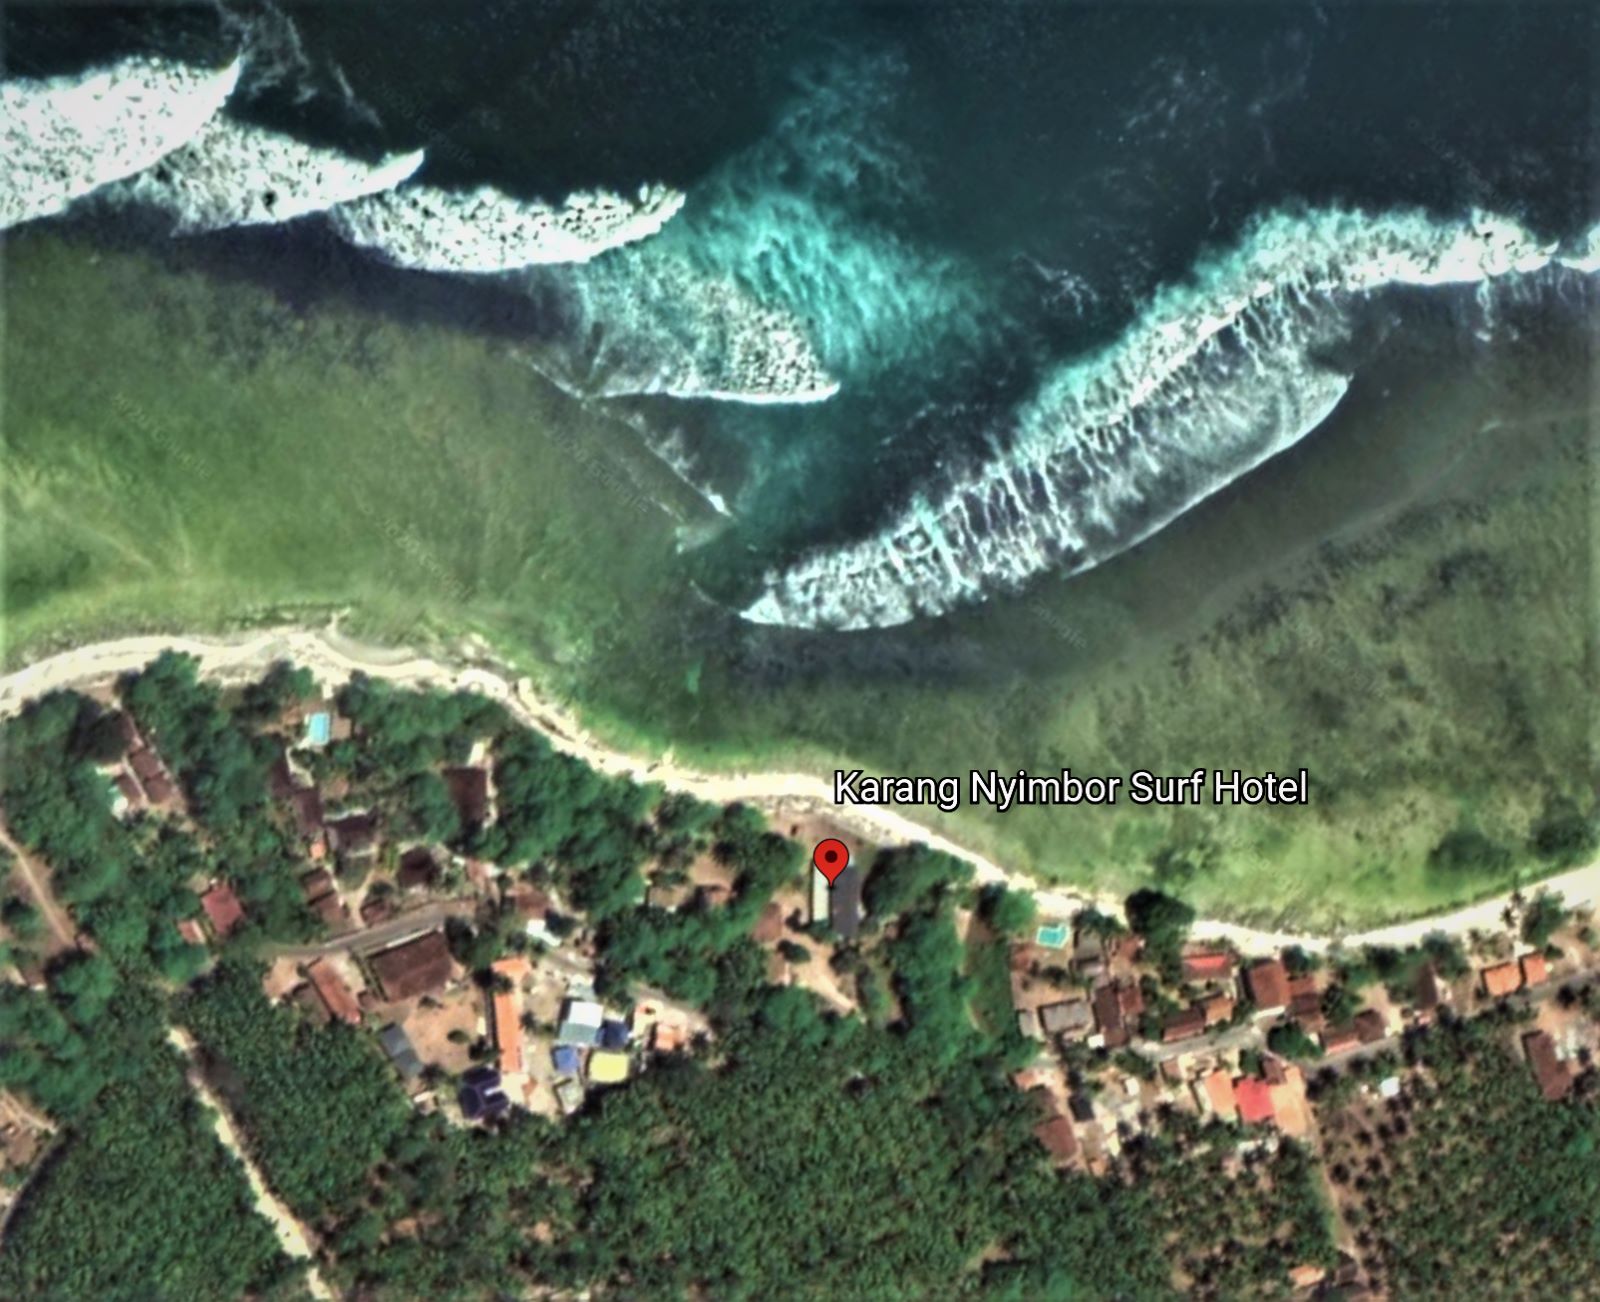 sumatra-ujung-bocor-krui-surf-beach-property